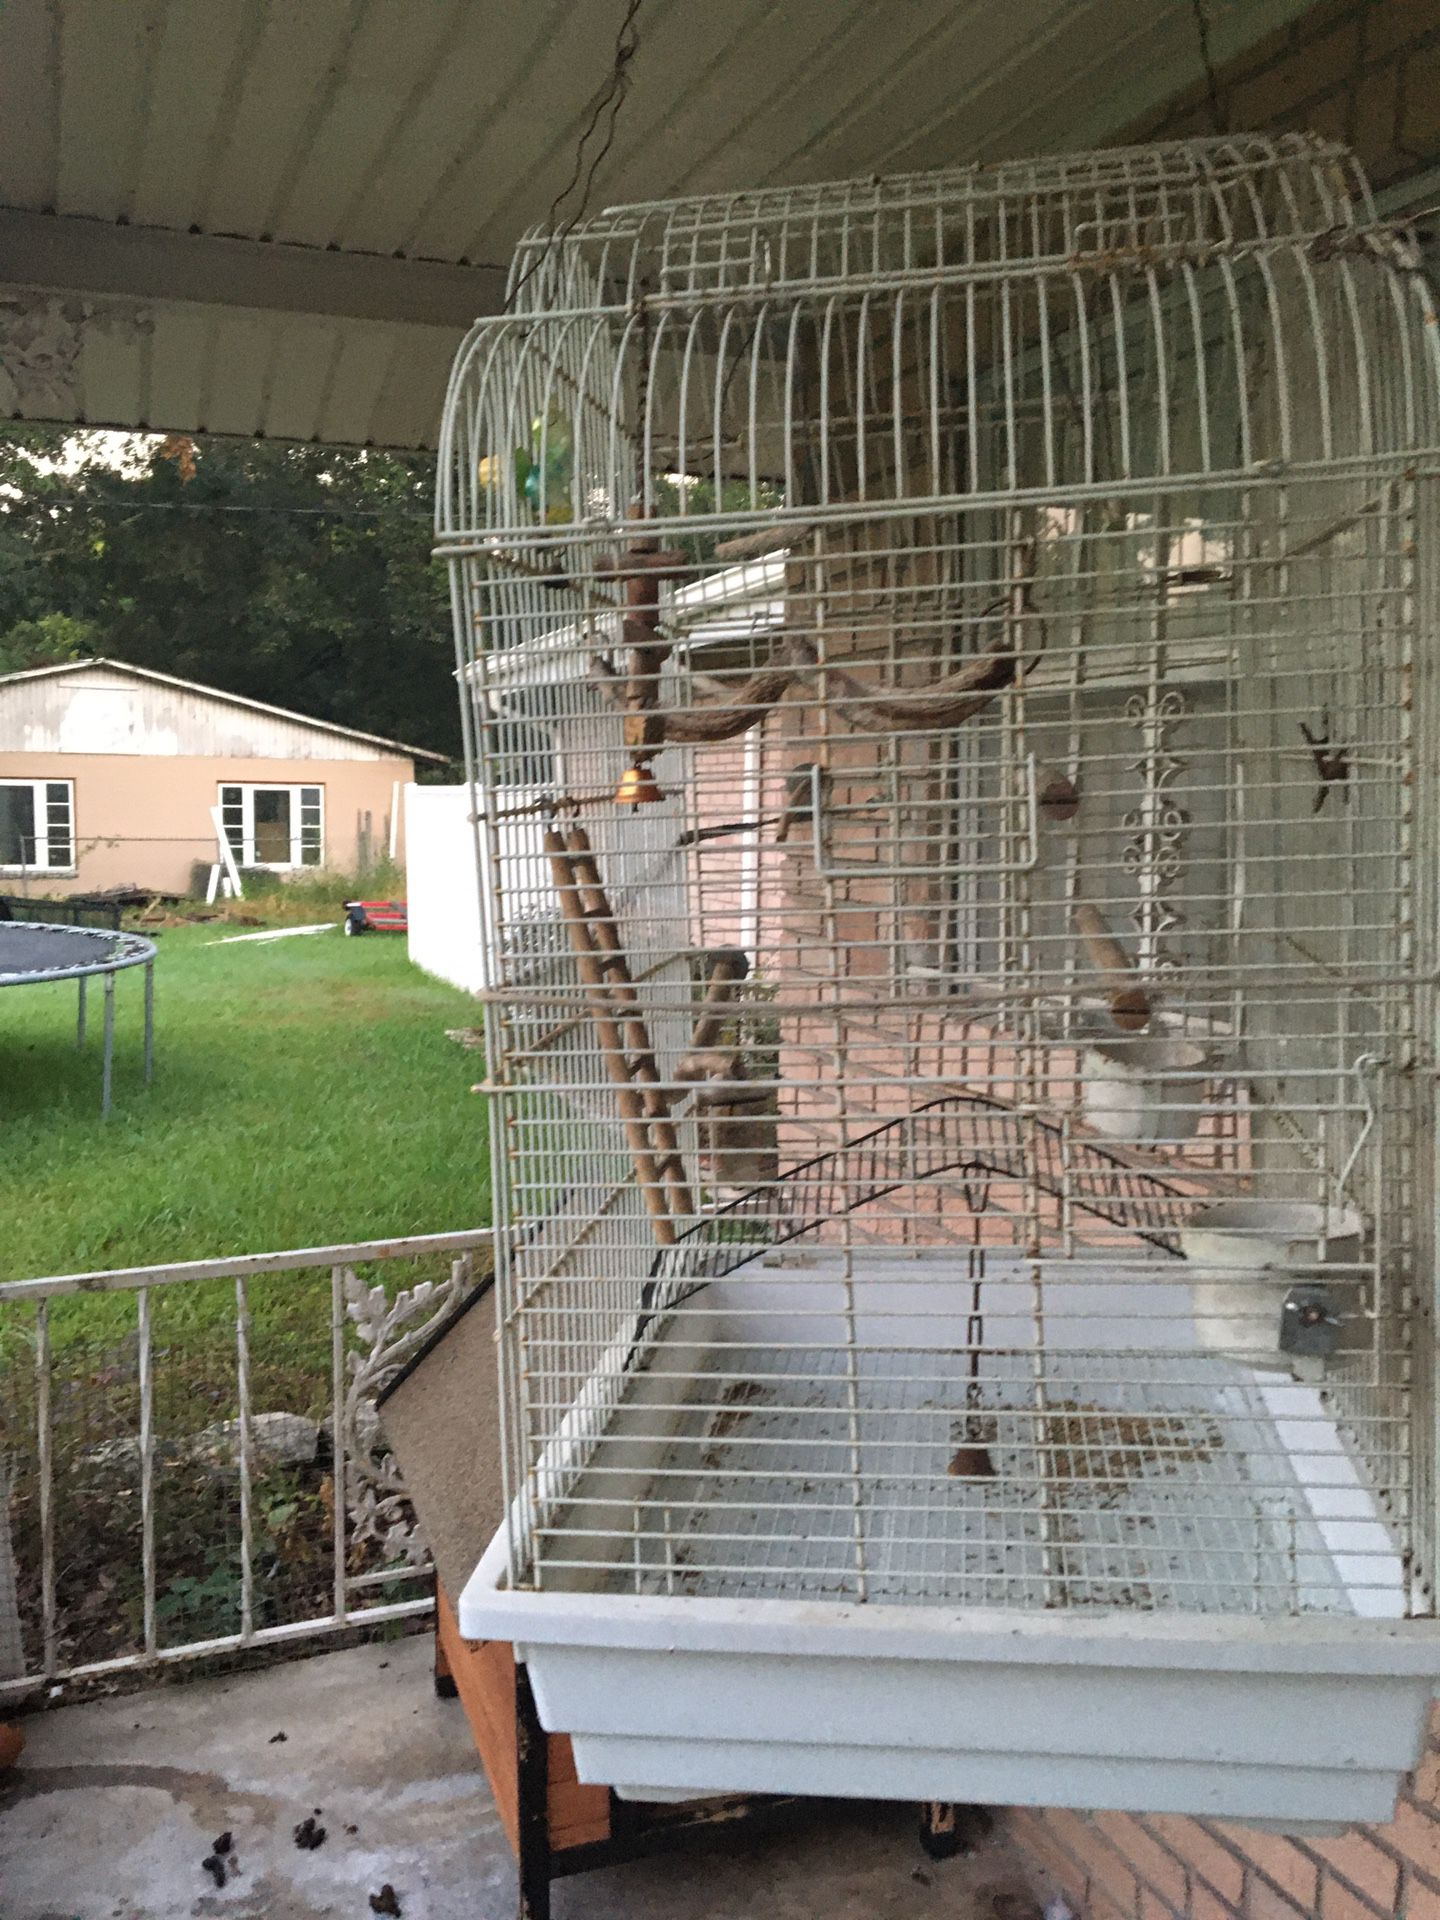 Huge bird cage